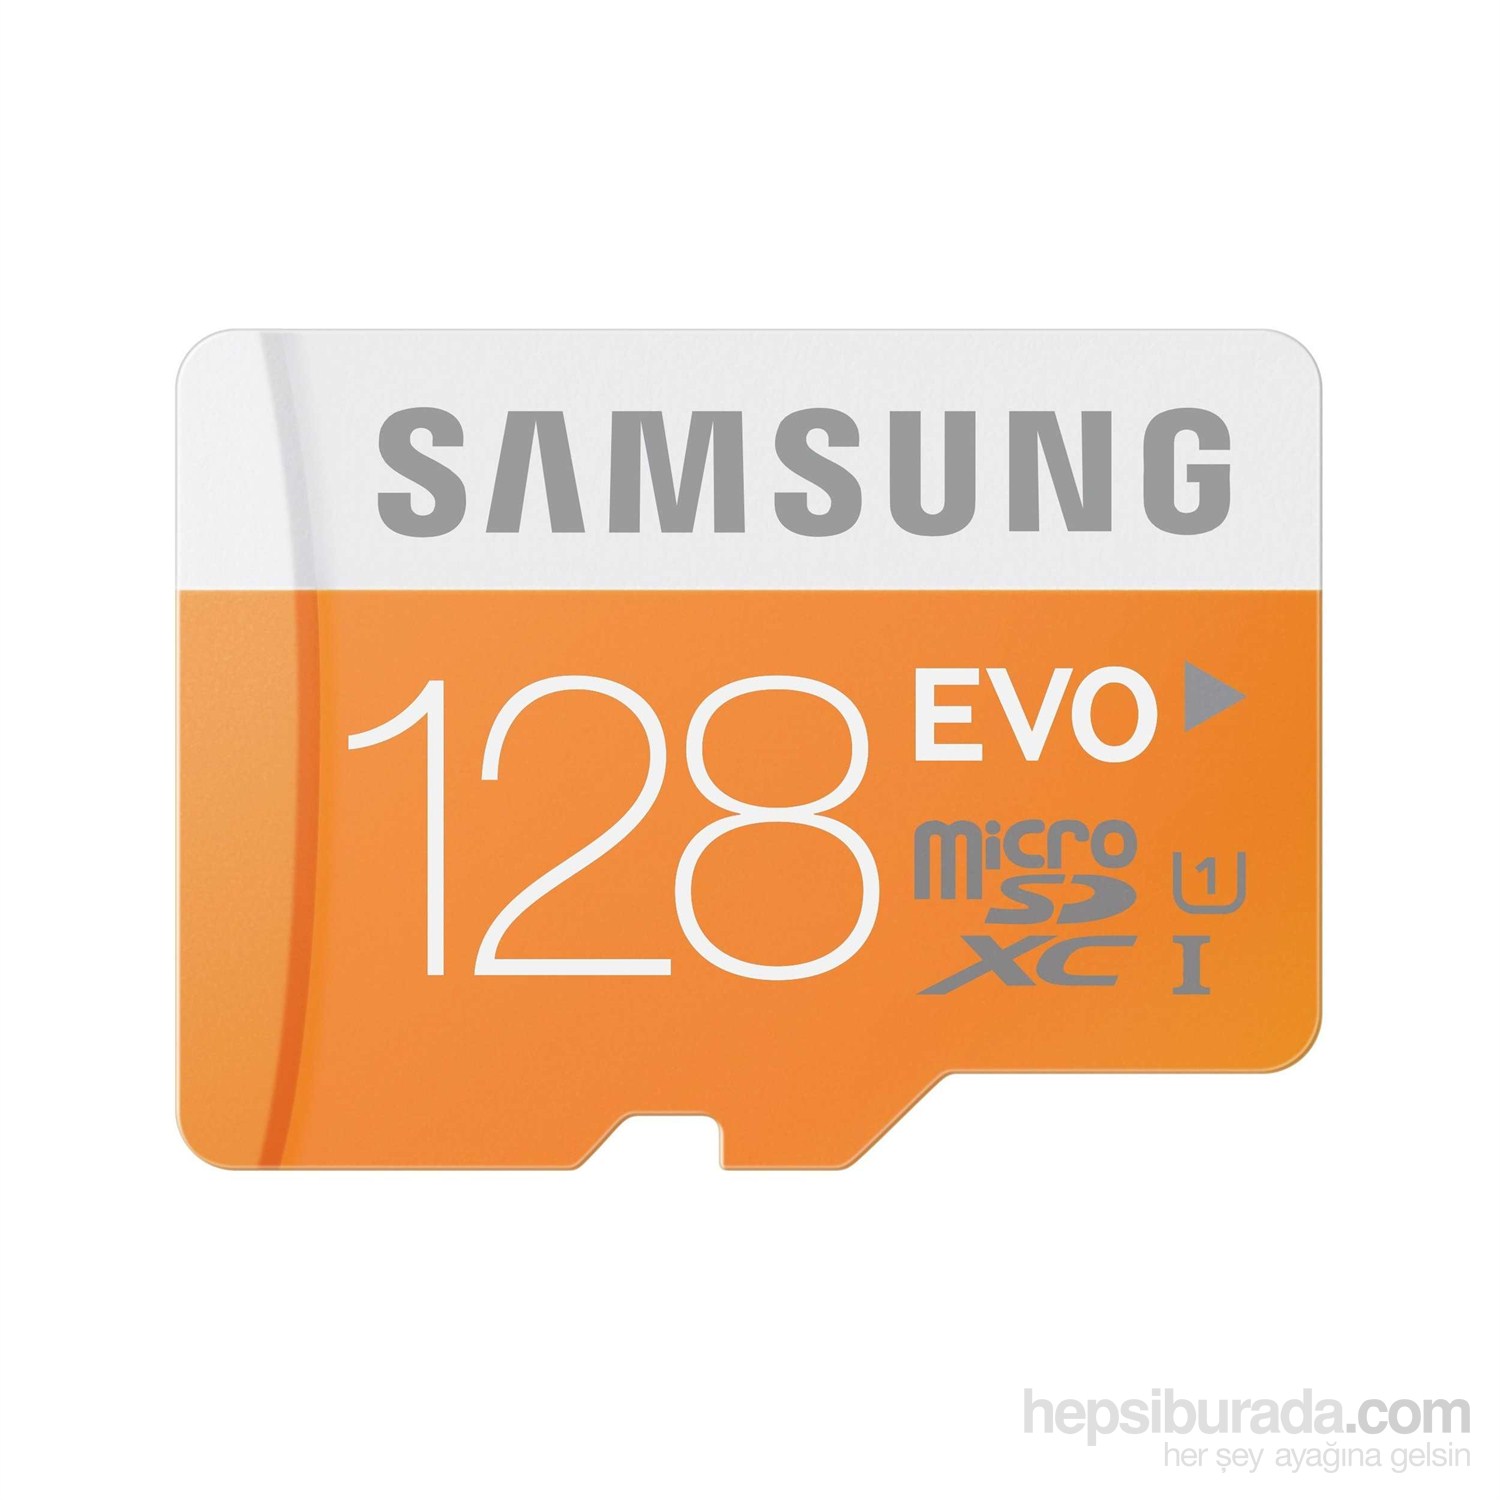 Samsung 128GB MicroSD Evo Class10 48mb/sn + SD Adaptör MB-MP128DA